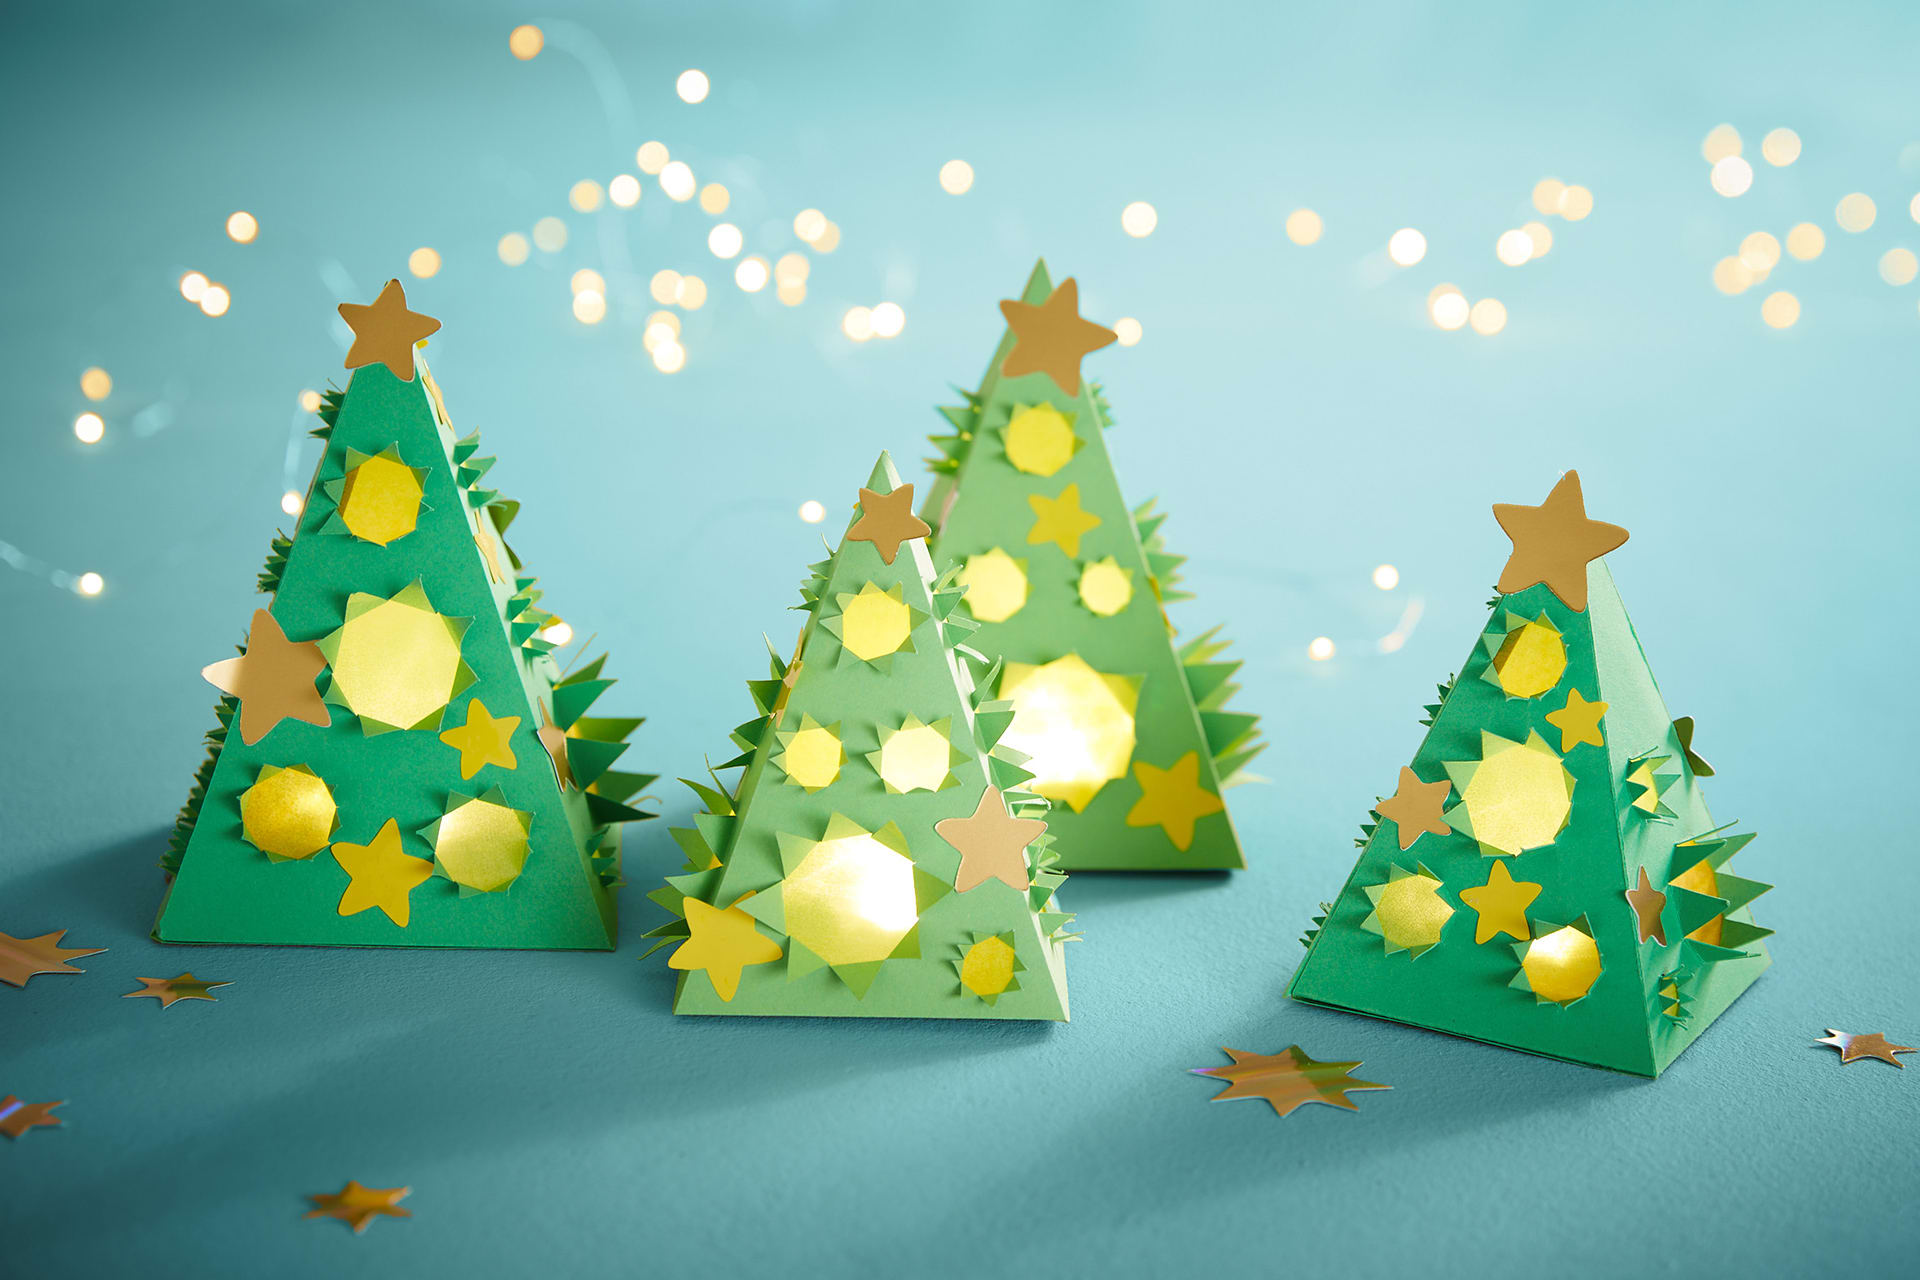 Mal- und Bastelvorlagen | Image | Tannenbäume aus grünem Tonkarton in Pyramidenform,  mit goldenen Sternen, Lichtlöcher mit Transparent